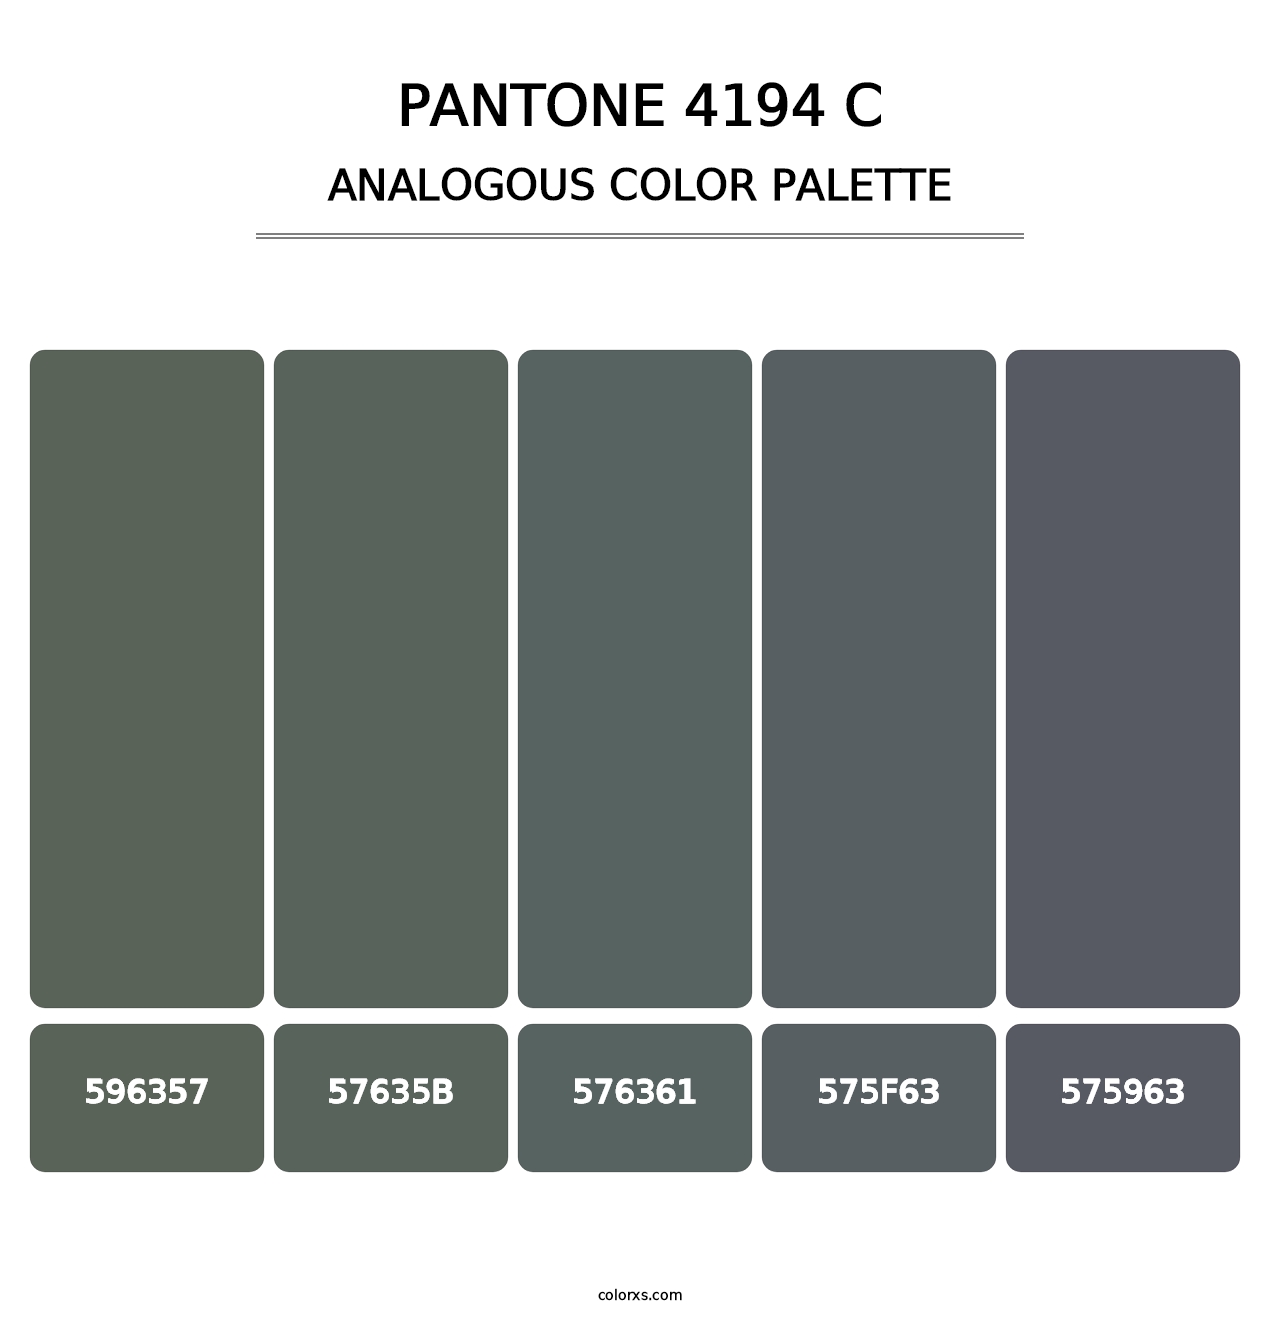 PANTONE 4194 C - Analogous Color Palette